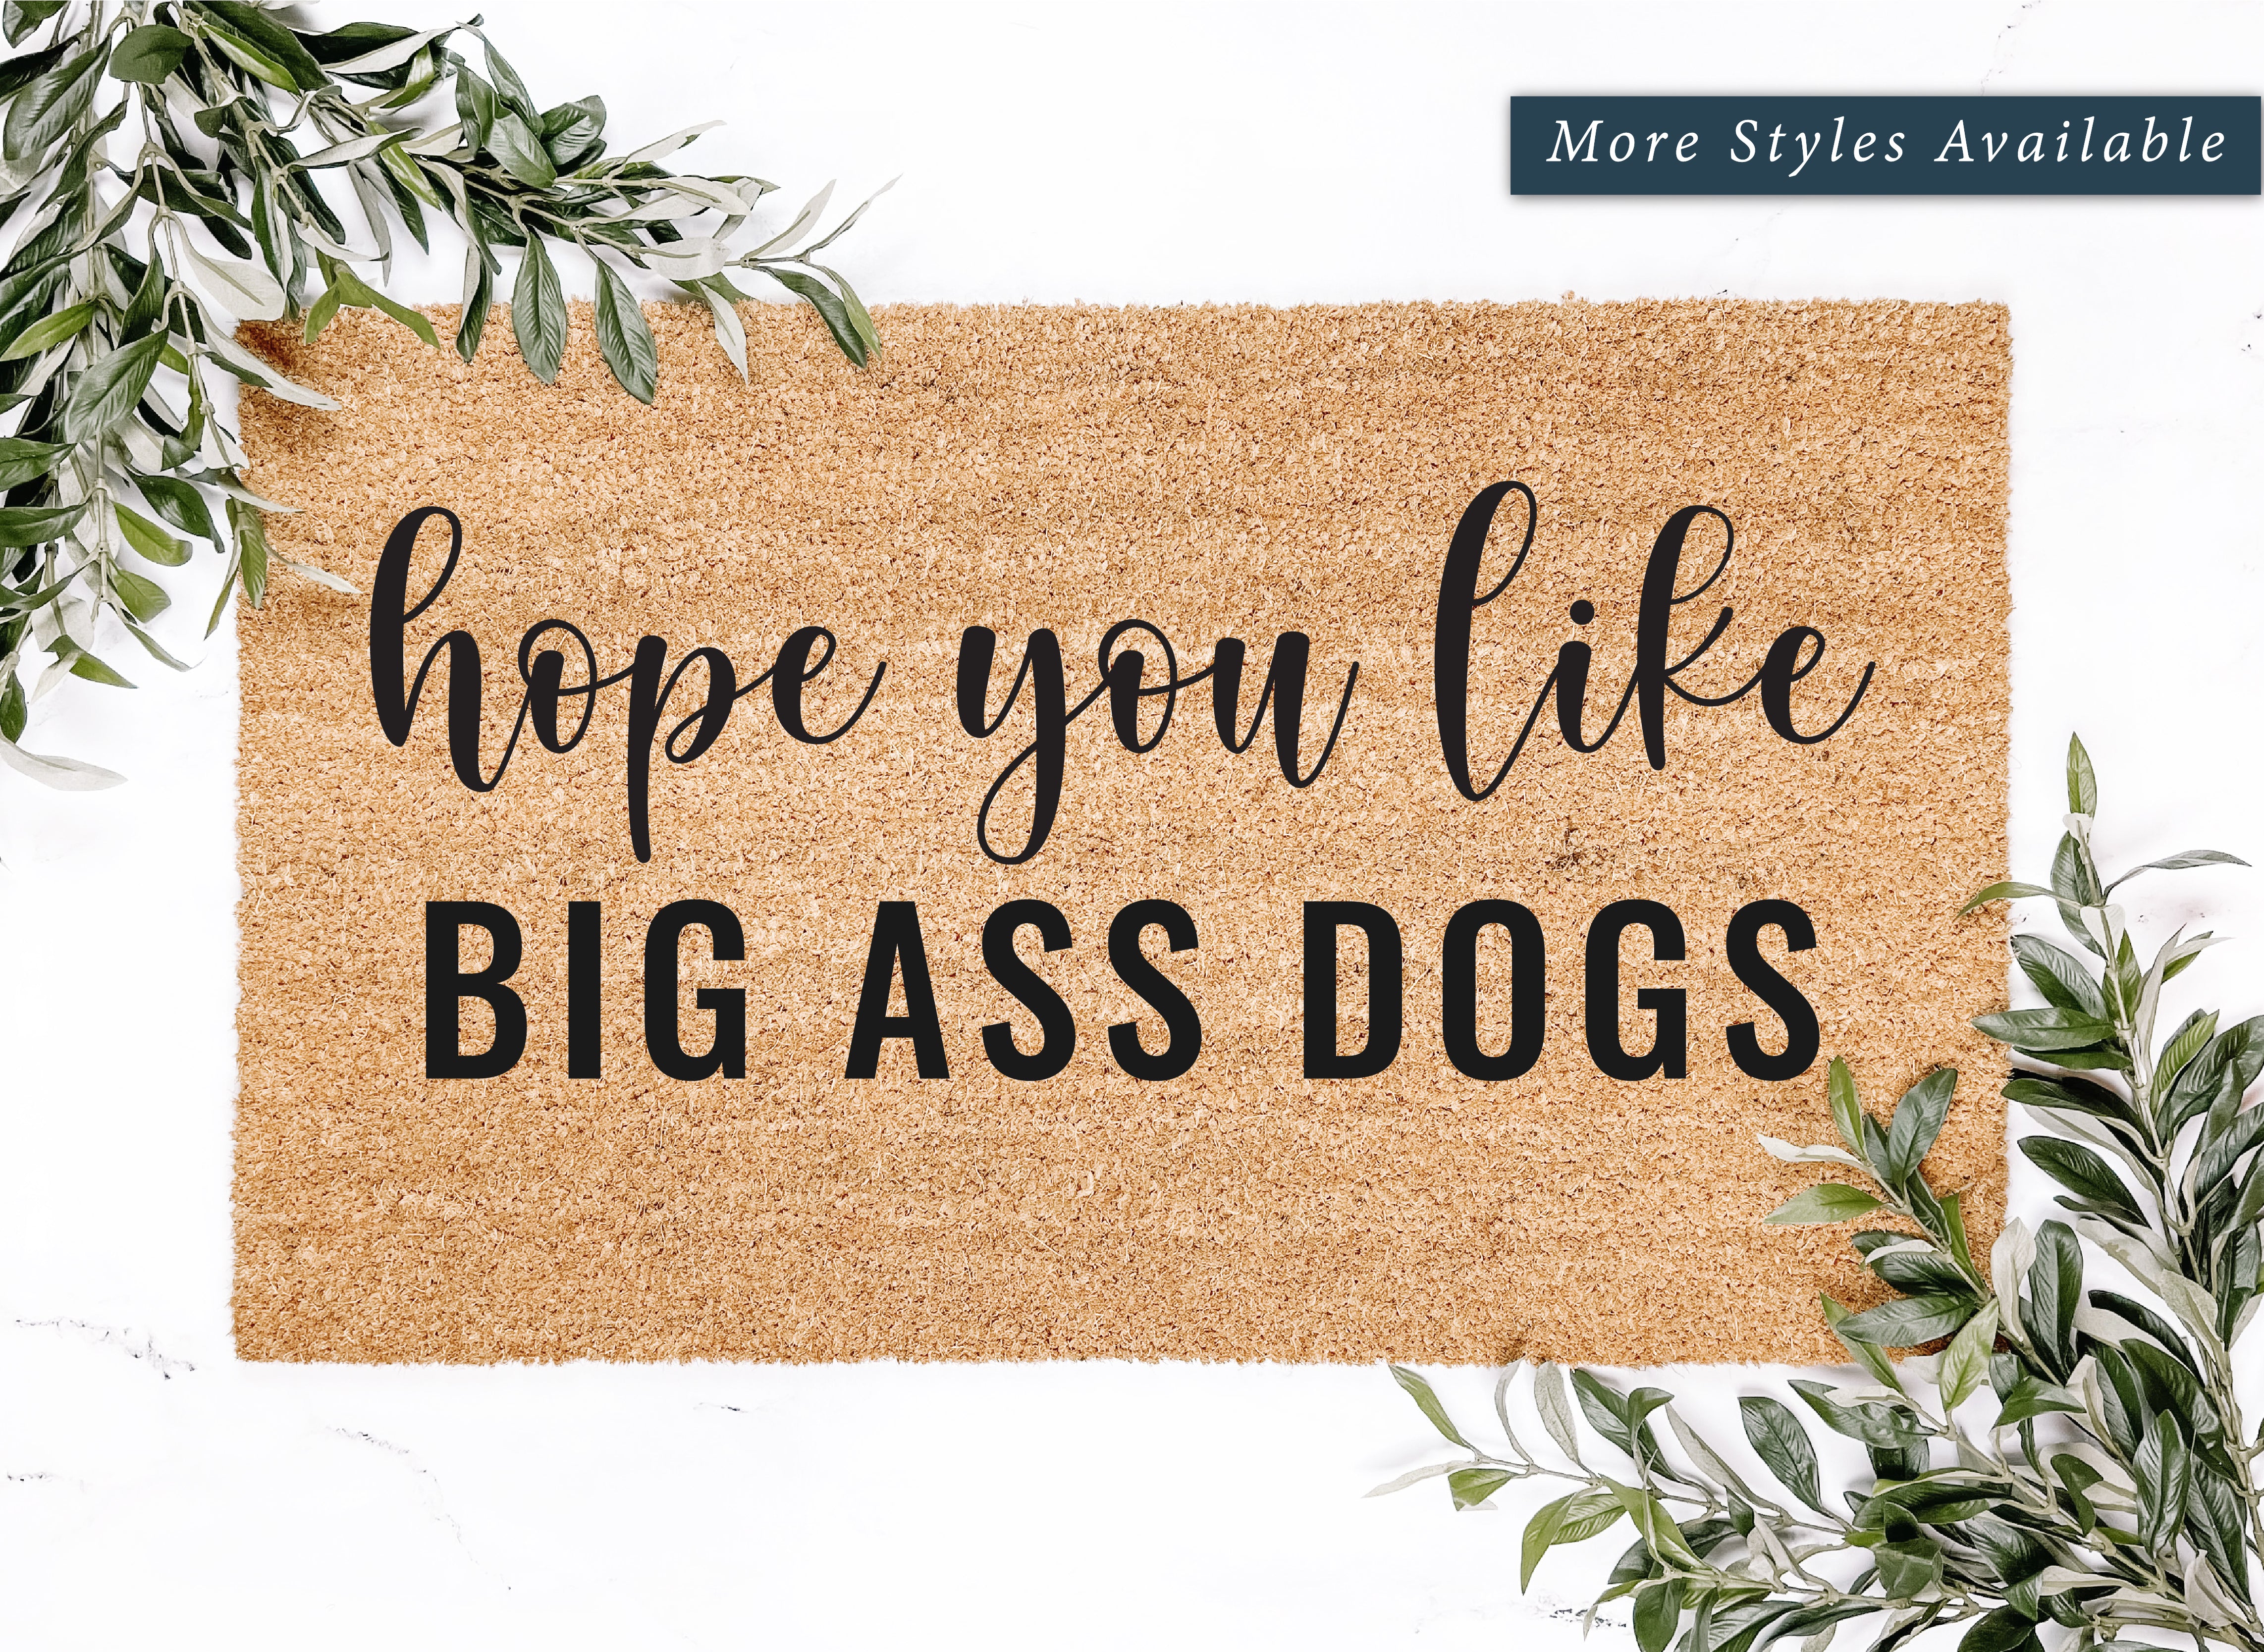 Hope You Like Big Ass Dogs Doormat